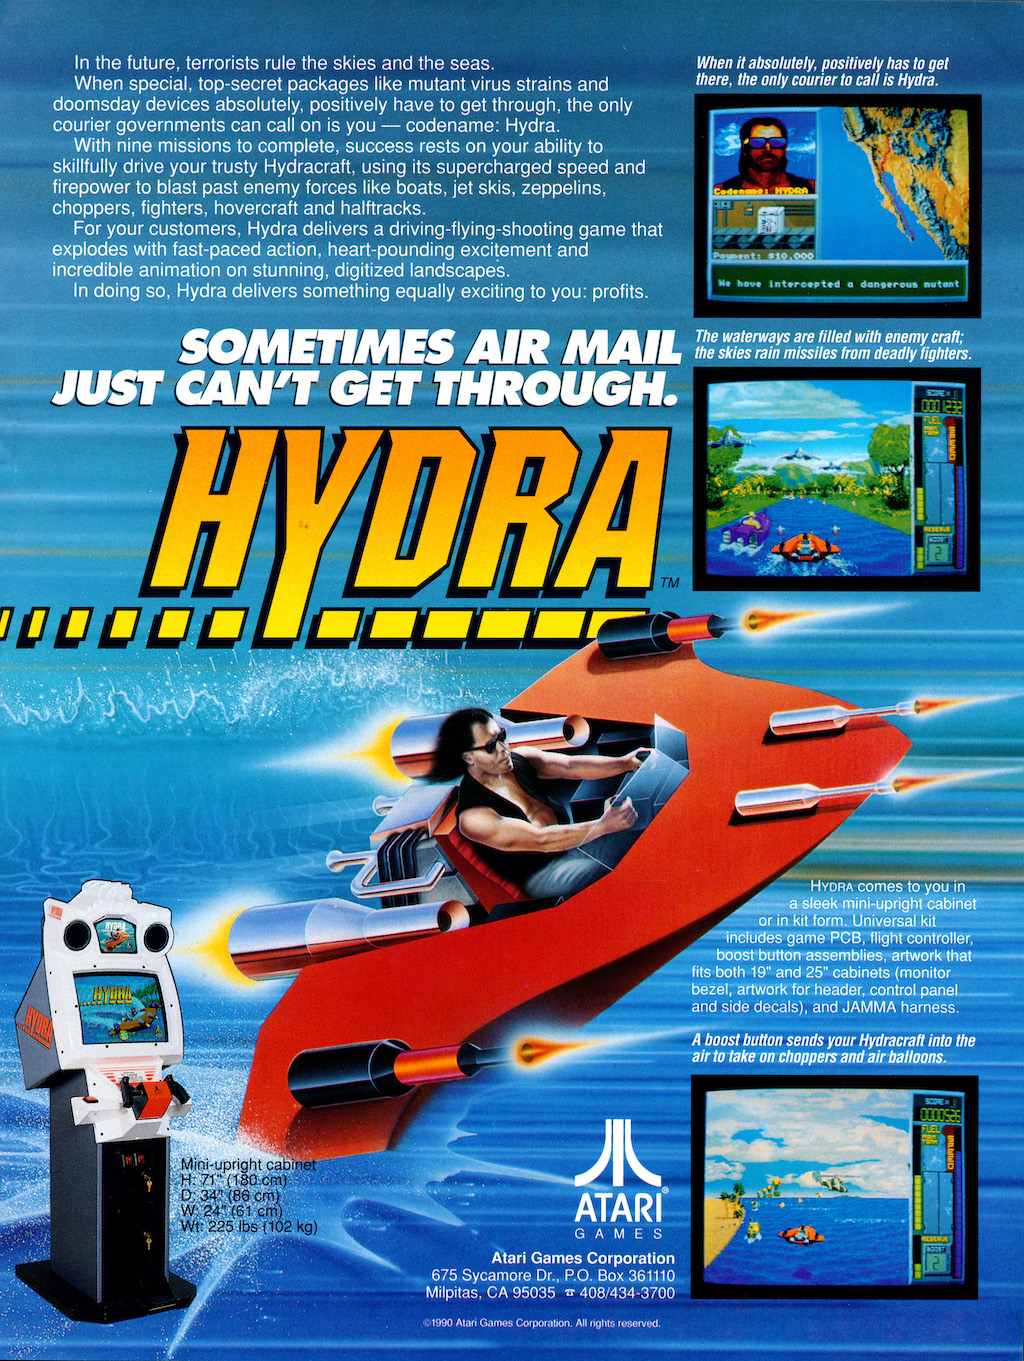 Atari Games Hydra